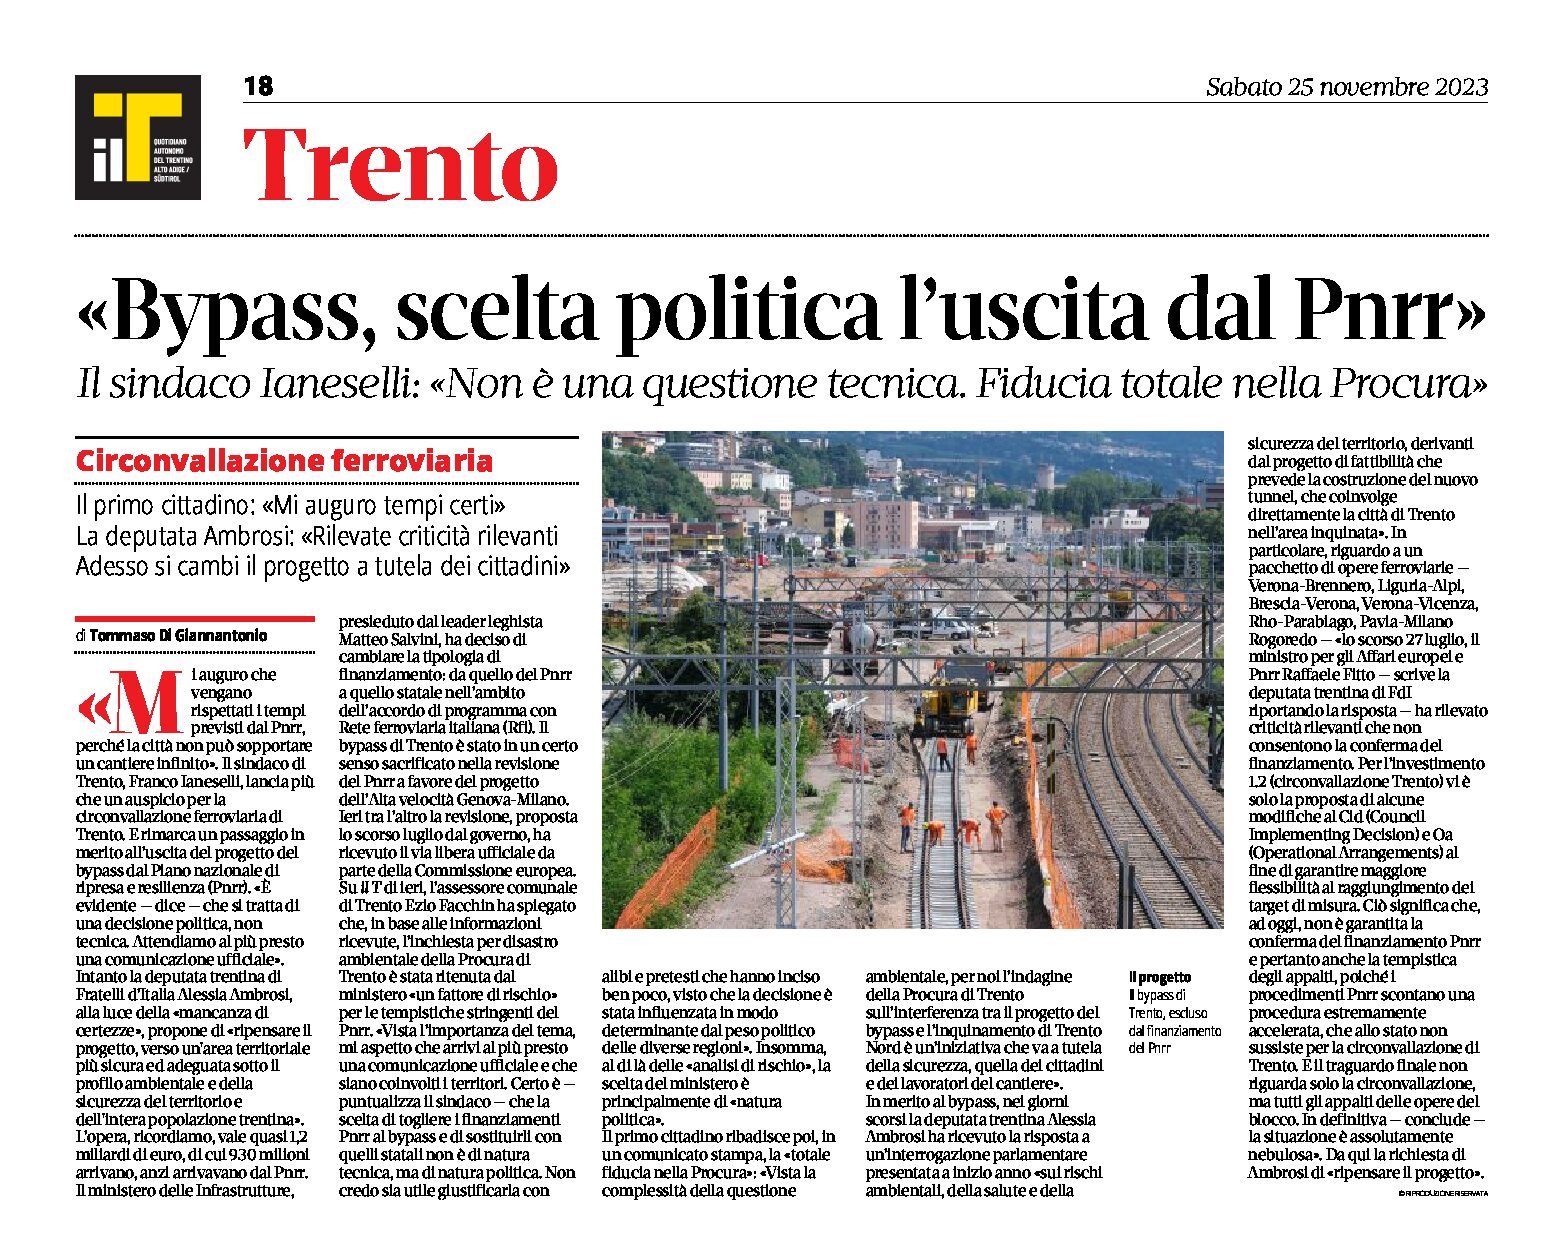 Trento, bypass ferroviario: l’uscita dal Pnrr non è una questione tecnica, è una scelta politica